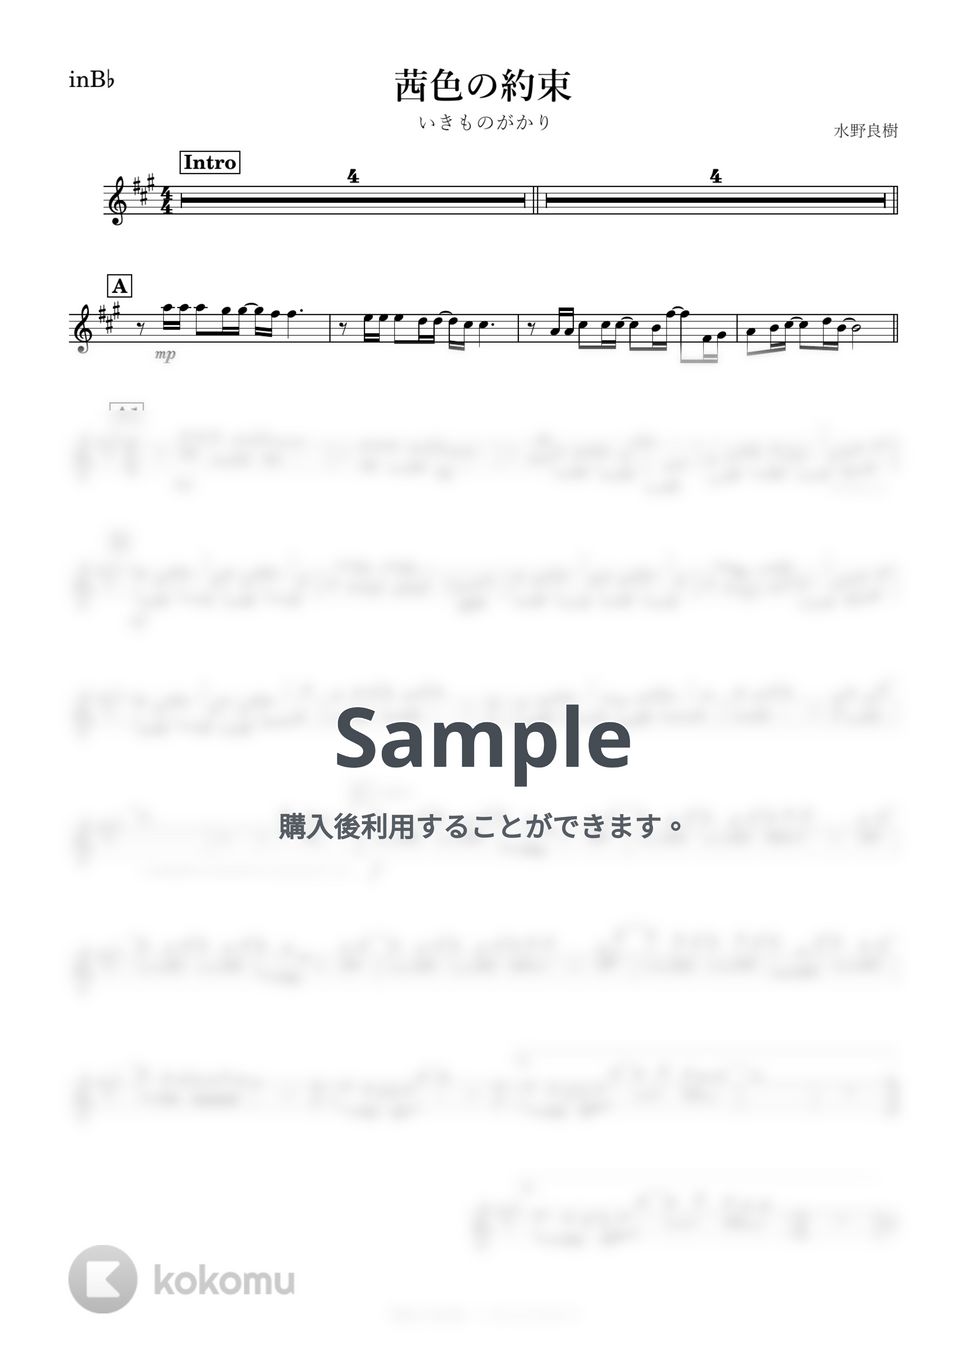 いきものがかり - 茜色の約束 (B♭) by kanamusic